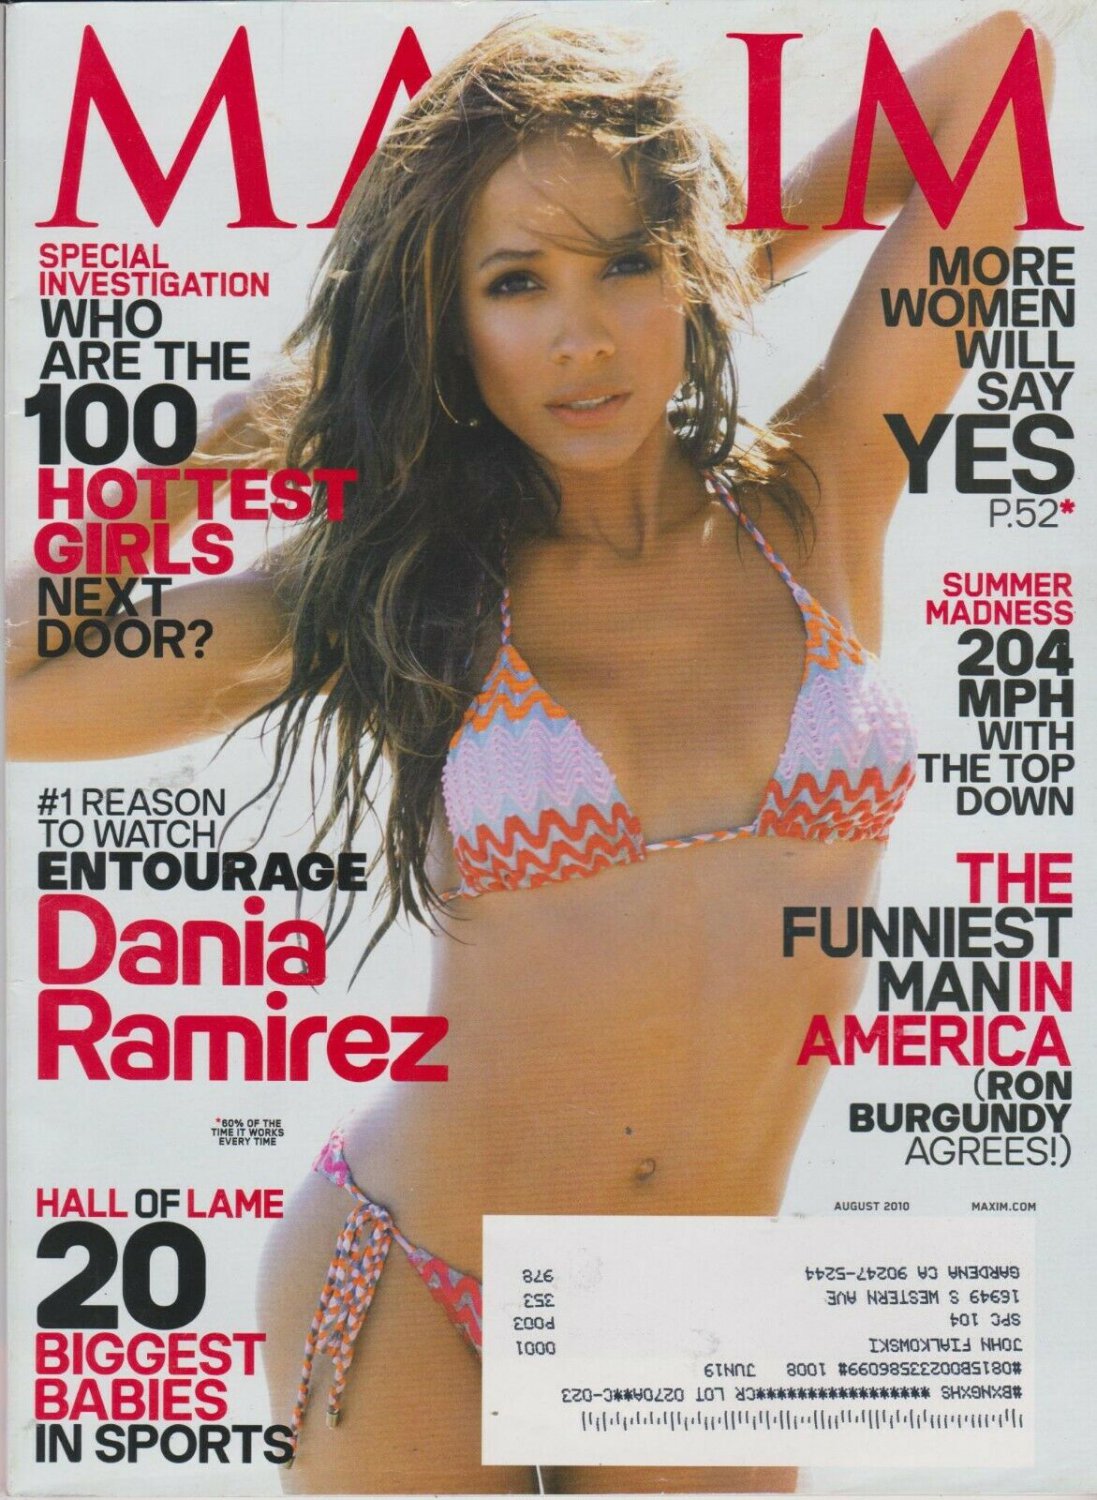 MAXIM Magazine #152 AUGUST 2010-A - Dania Ramirez - J-Wow - Kelly Brook !!!...